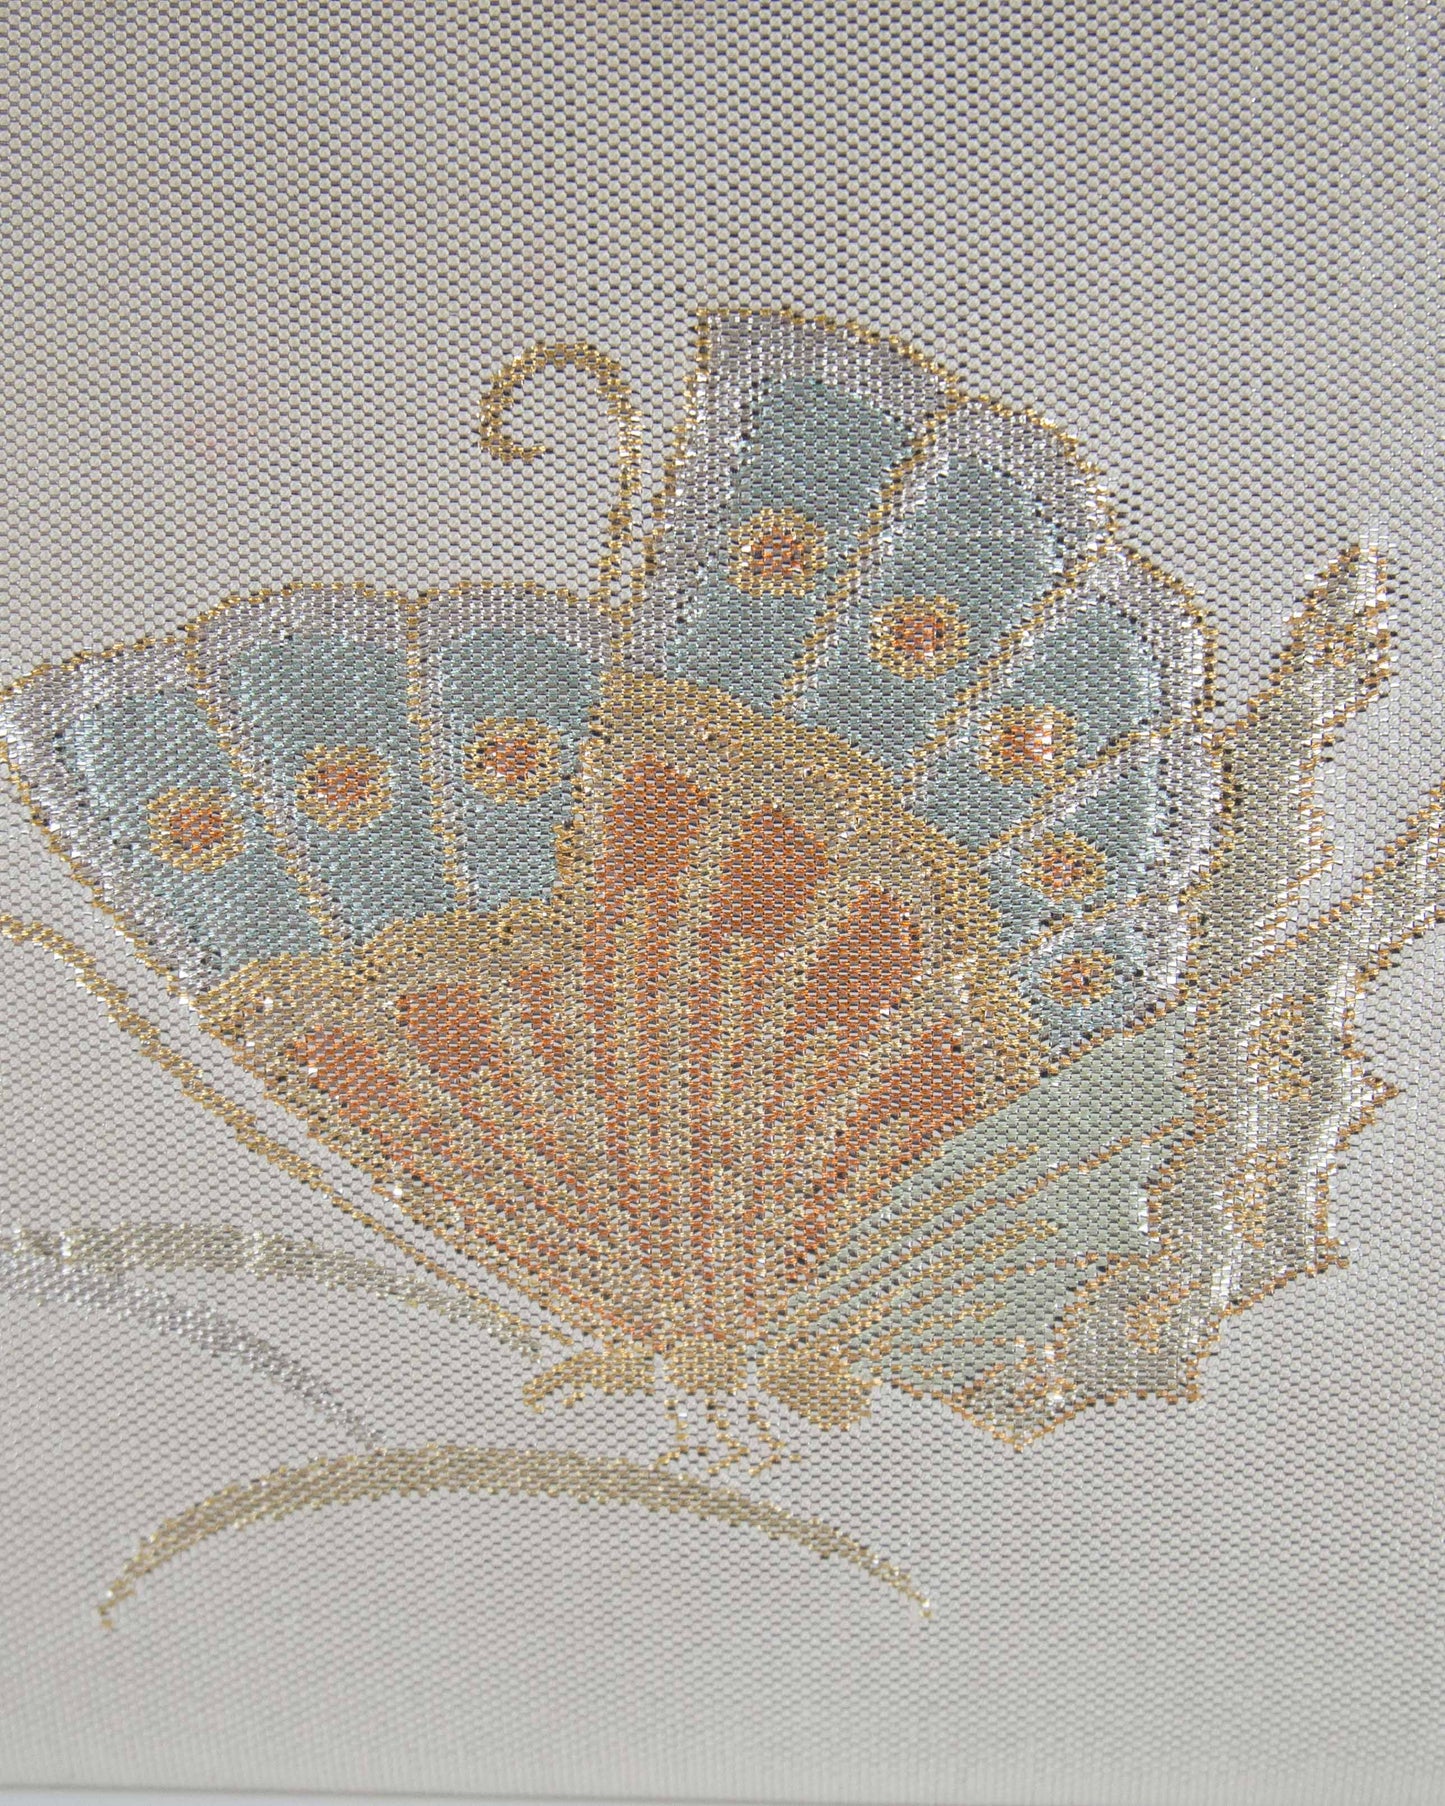 Silk Brocade Butterfly Frame Bag